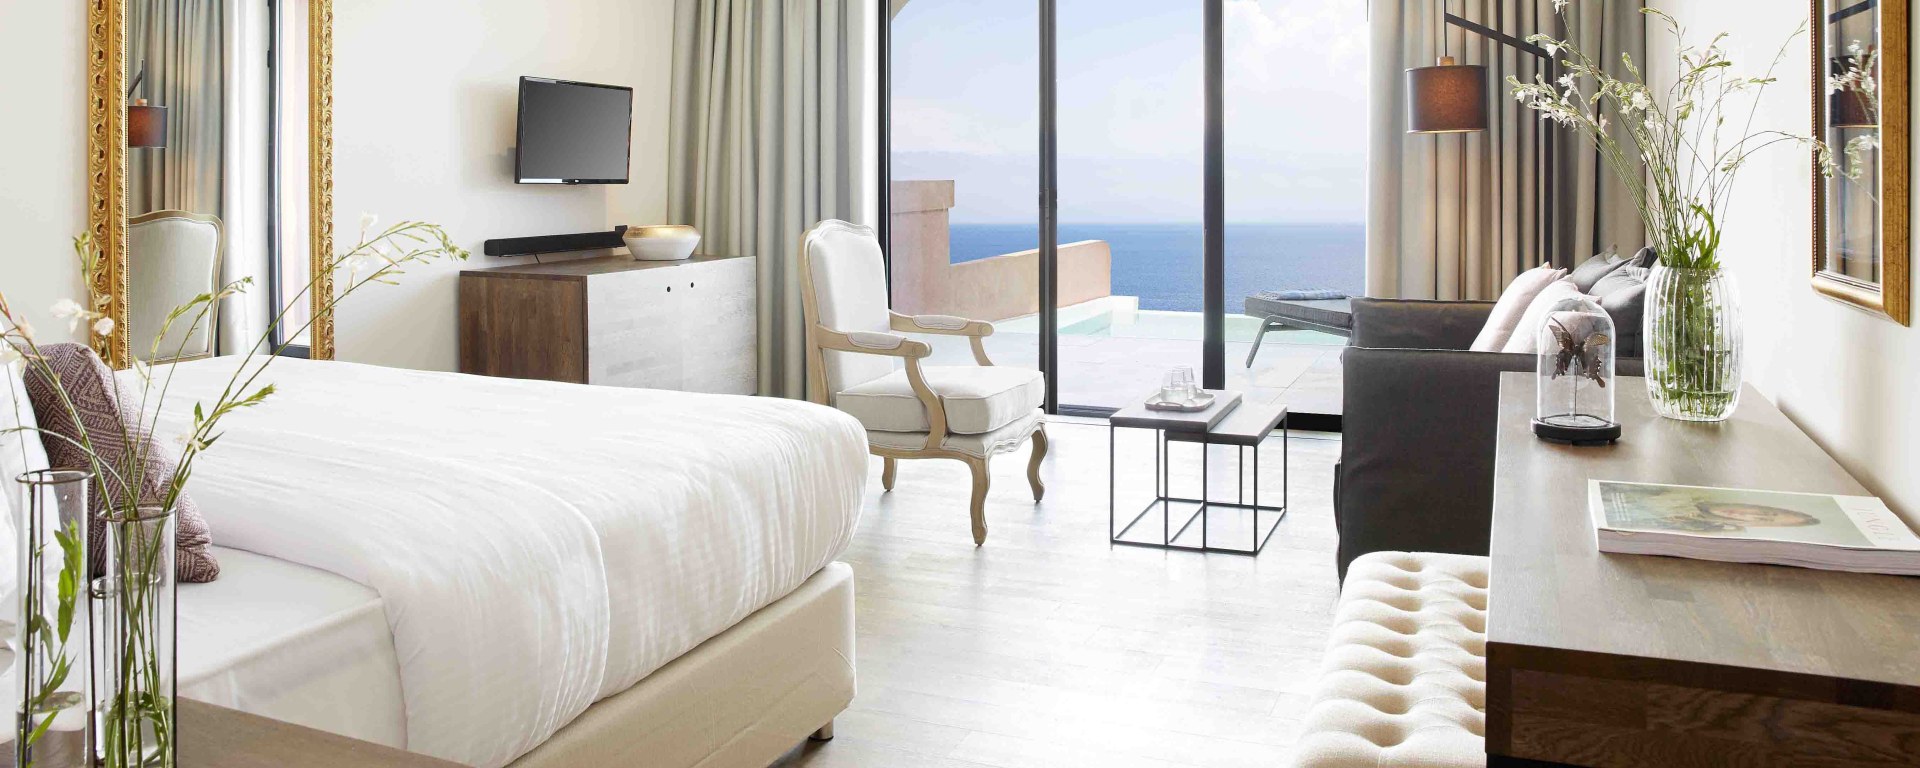 MarBella Nido Suite Hotel & Villas